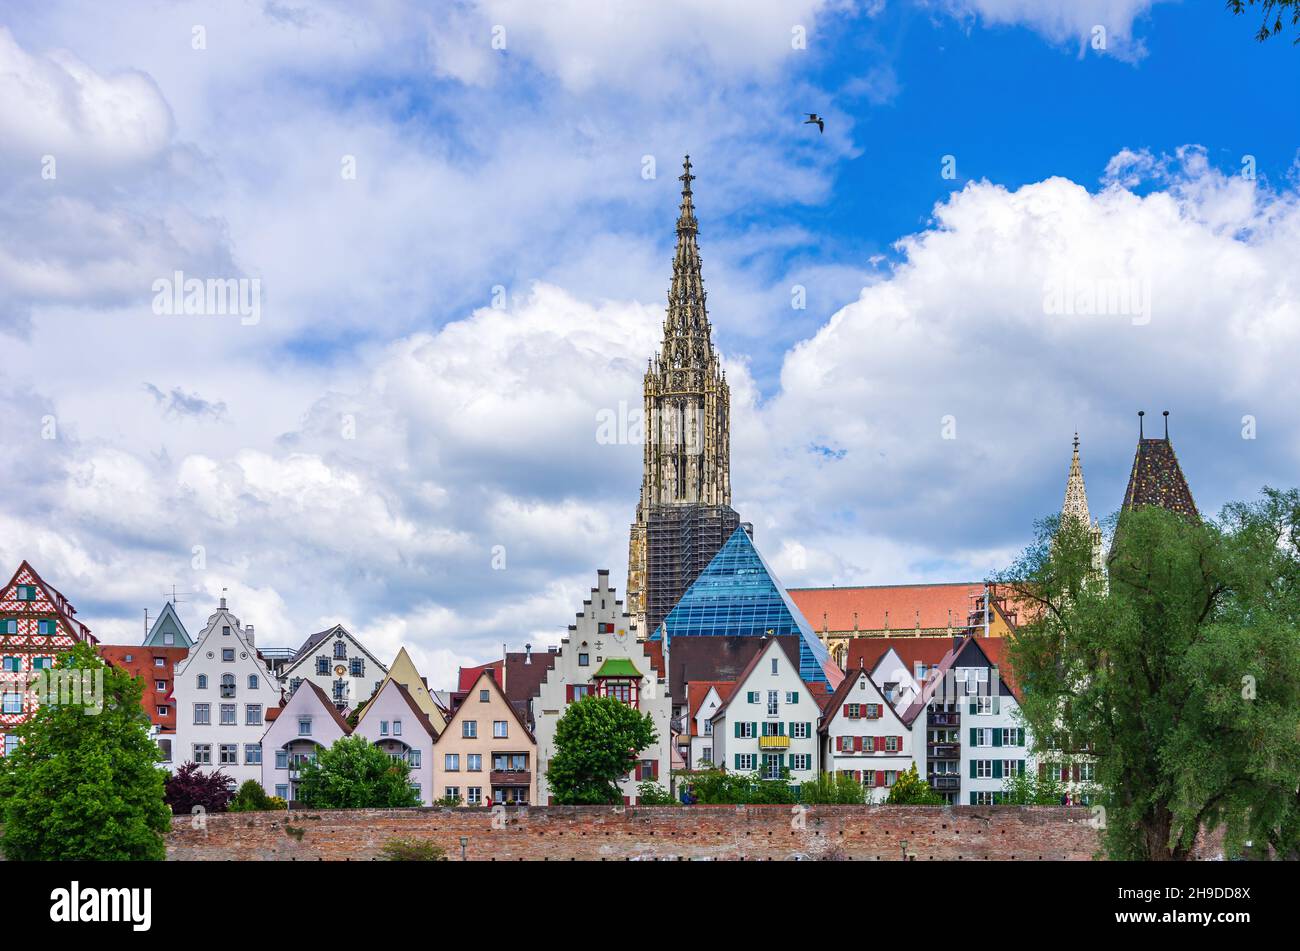 Ulm, Baden-Württemberg, Germania: Le case storiche del quartiere dei pescatori (Fischerviertel), le mura della città vecchia, la Torre Pendente (Metzgerturm). Foto Stock